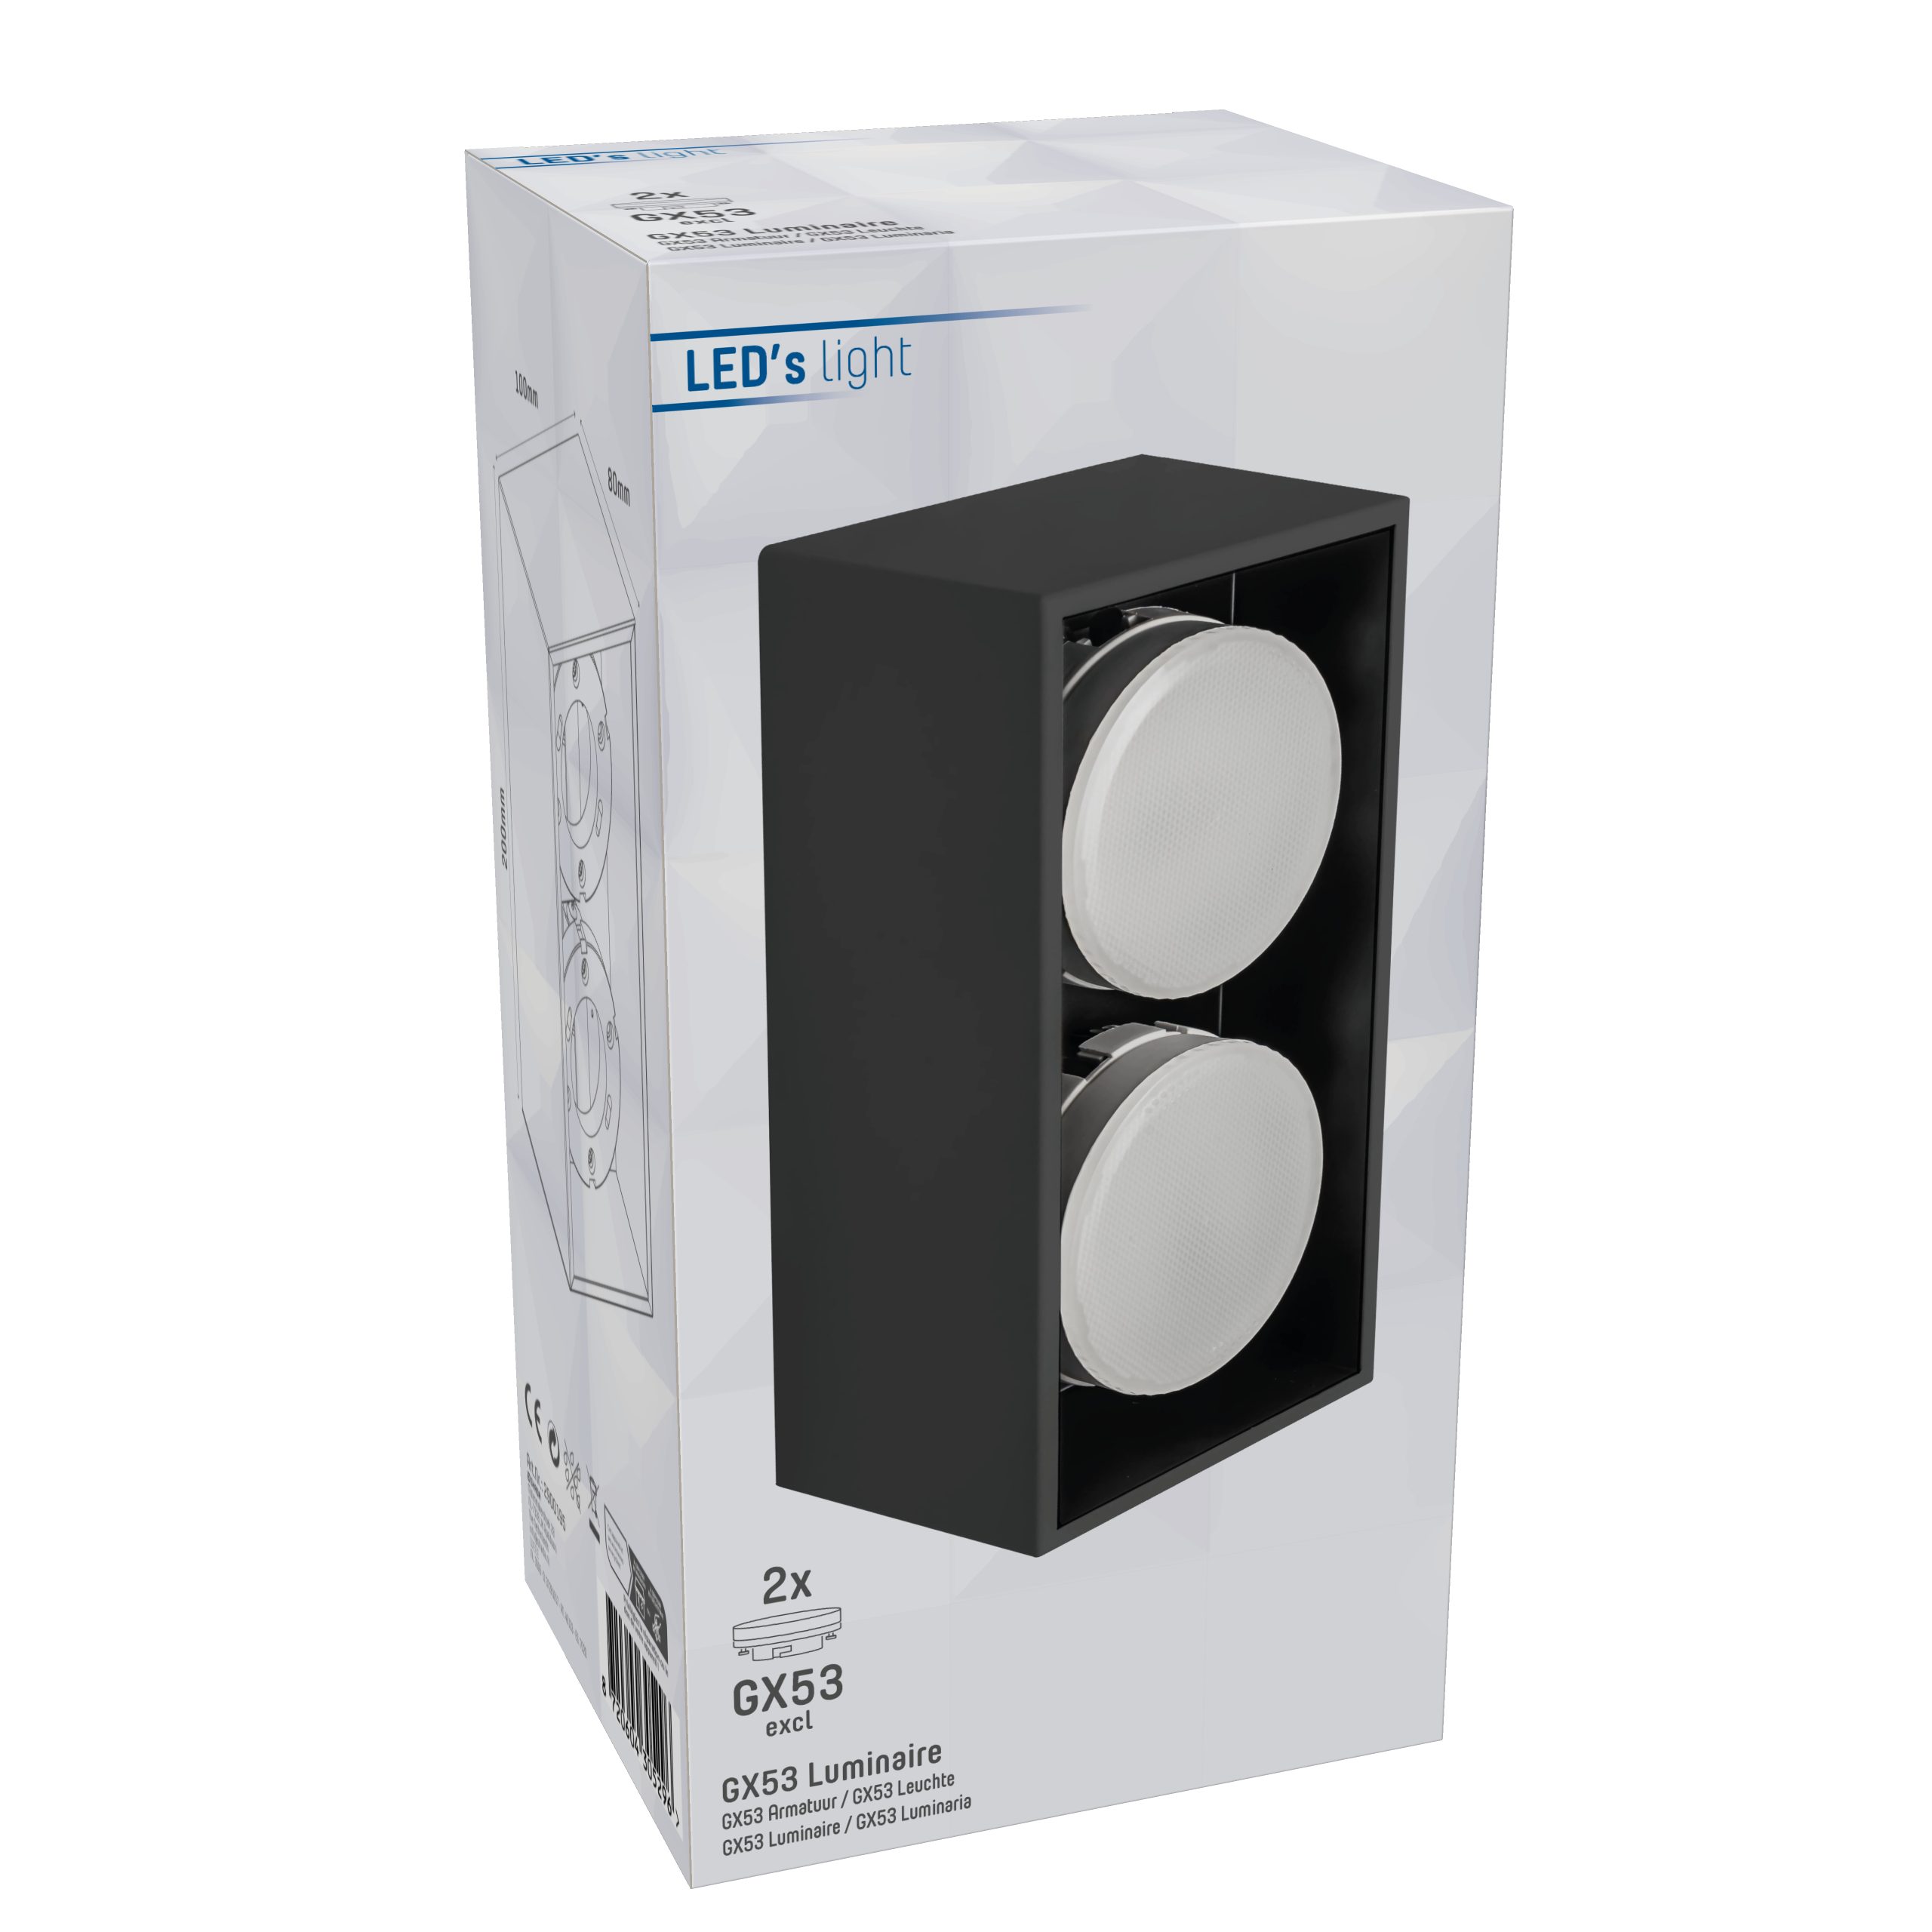 LED, GX53 2x 2900195 light bis 12W Deckenleuchte, Deckenleuchte LED's schwarz LED